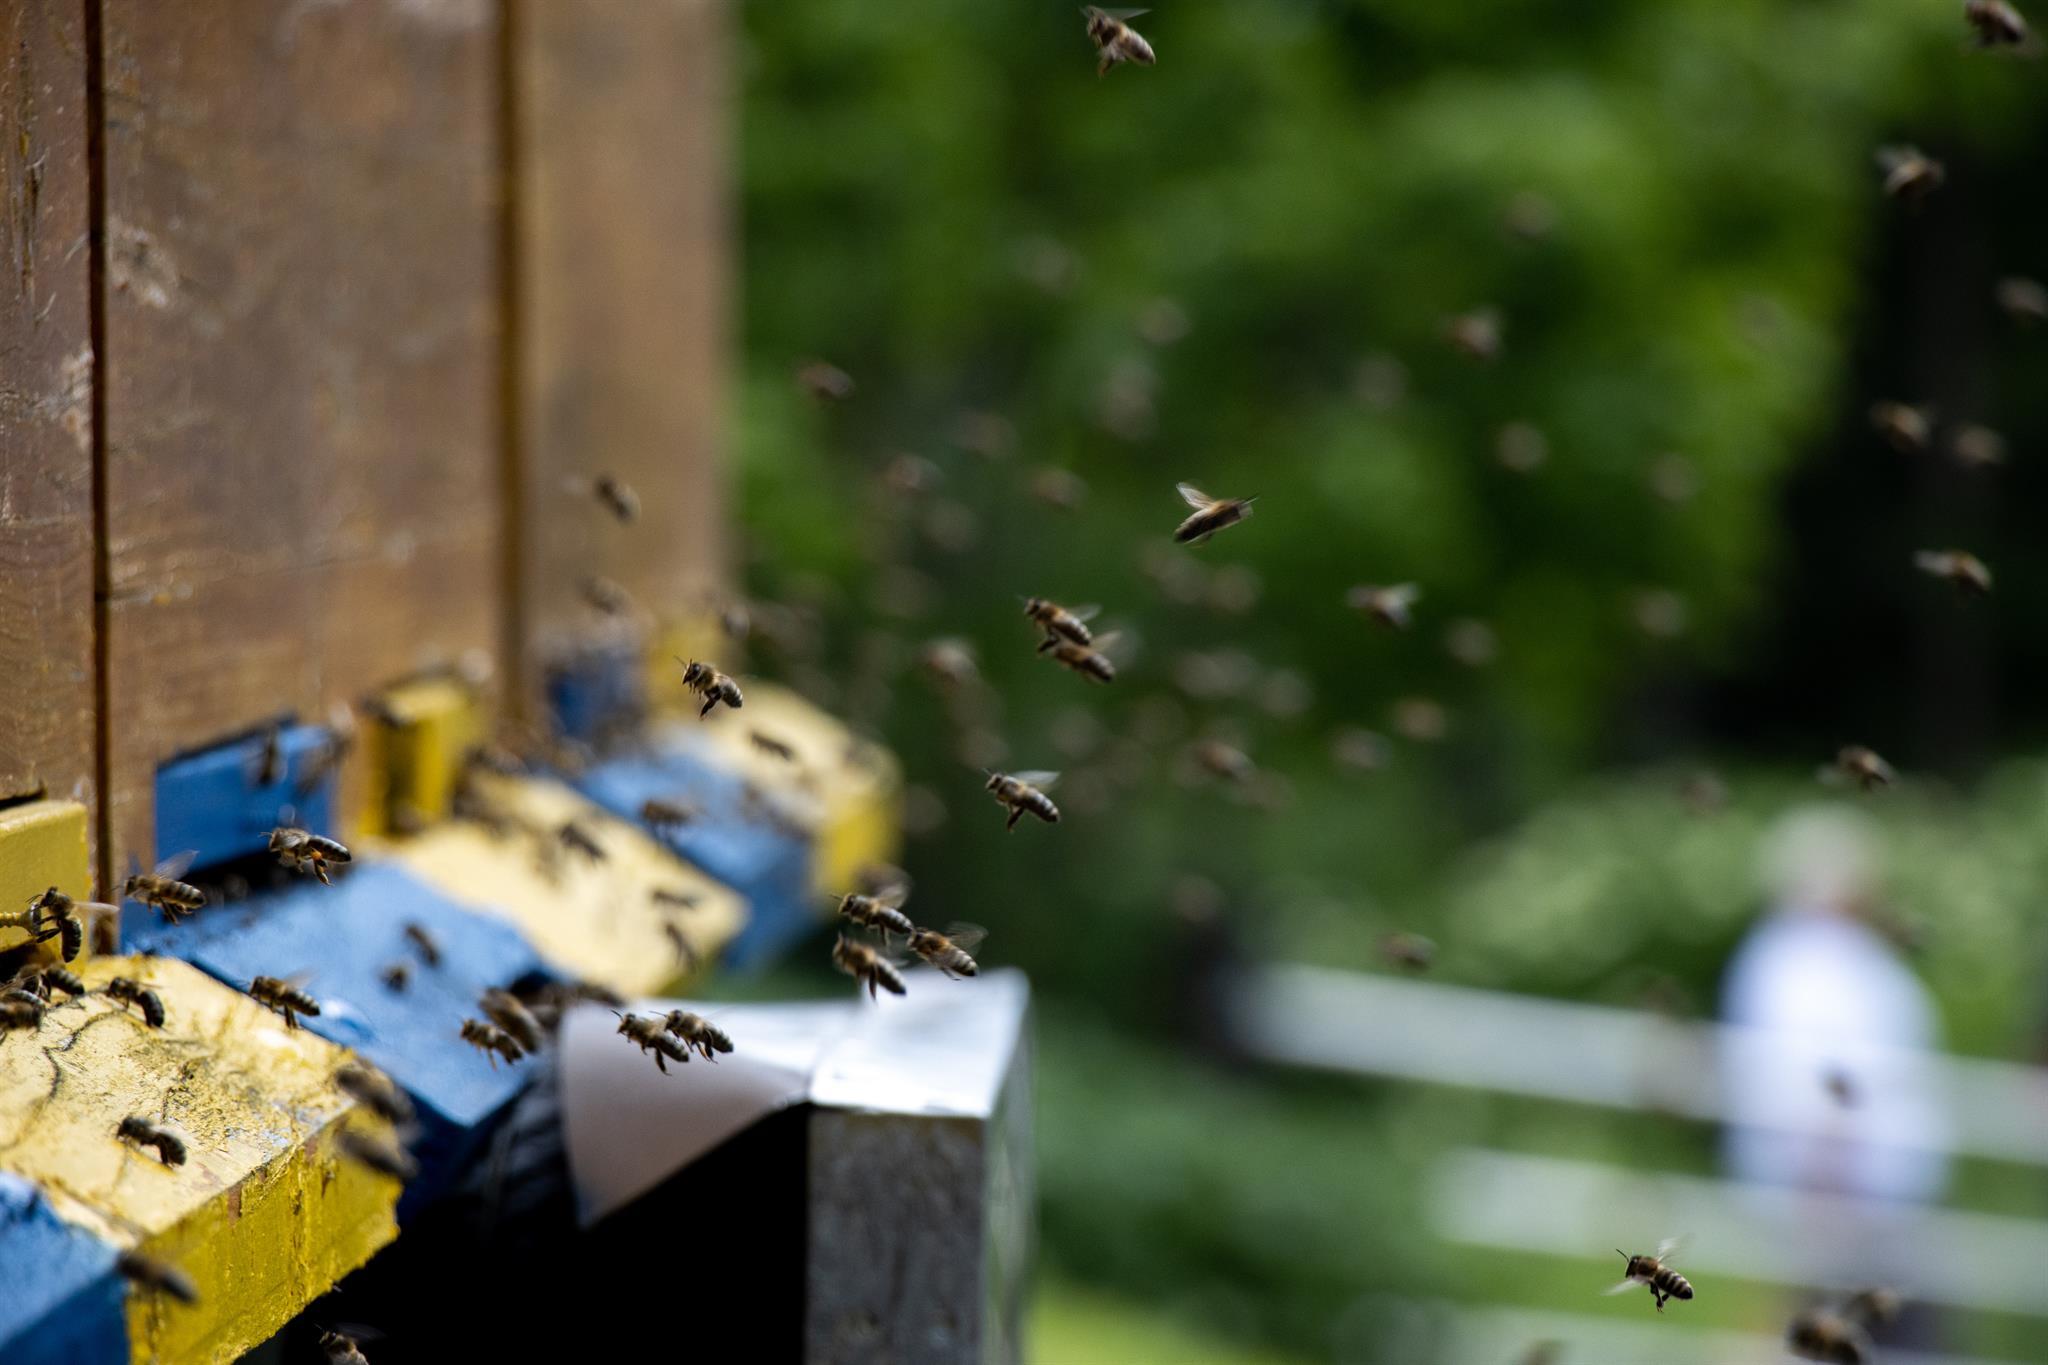 Bienenwachskerzen selbst herstellen